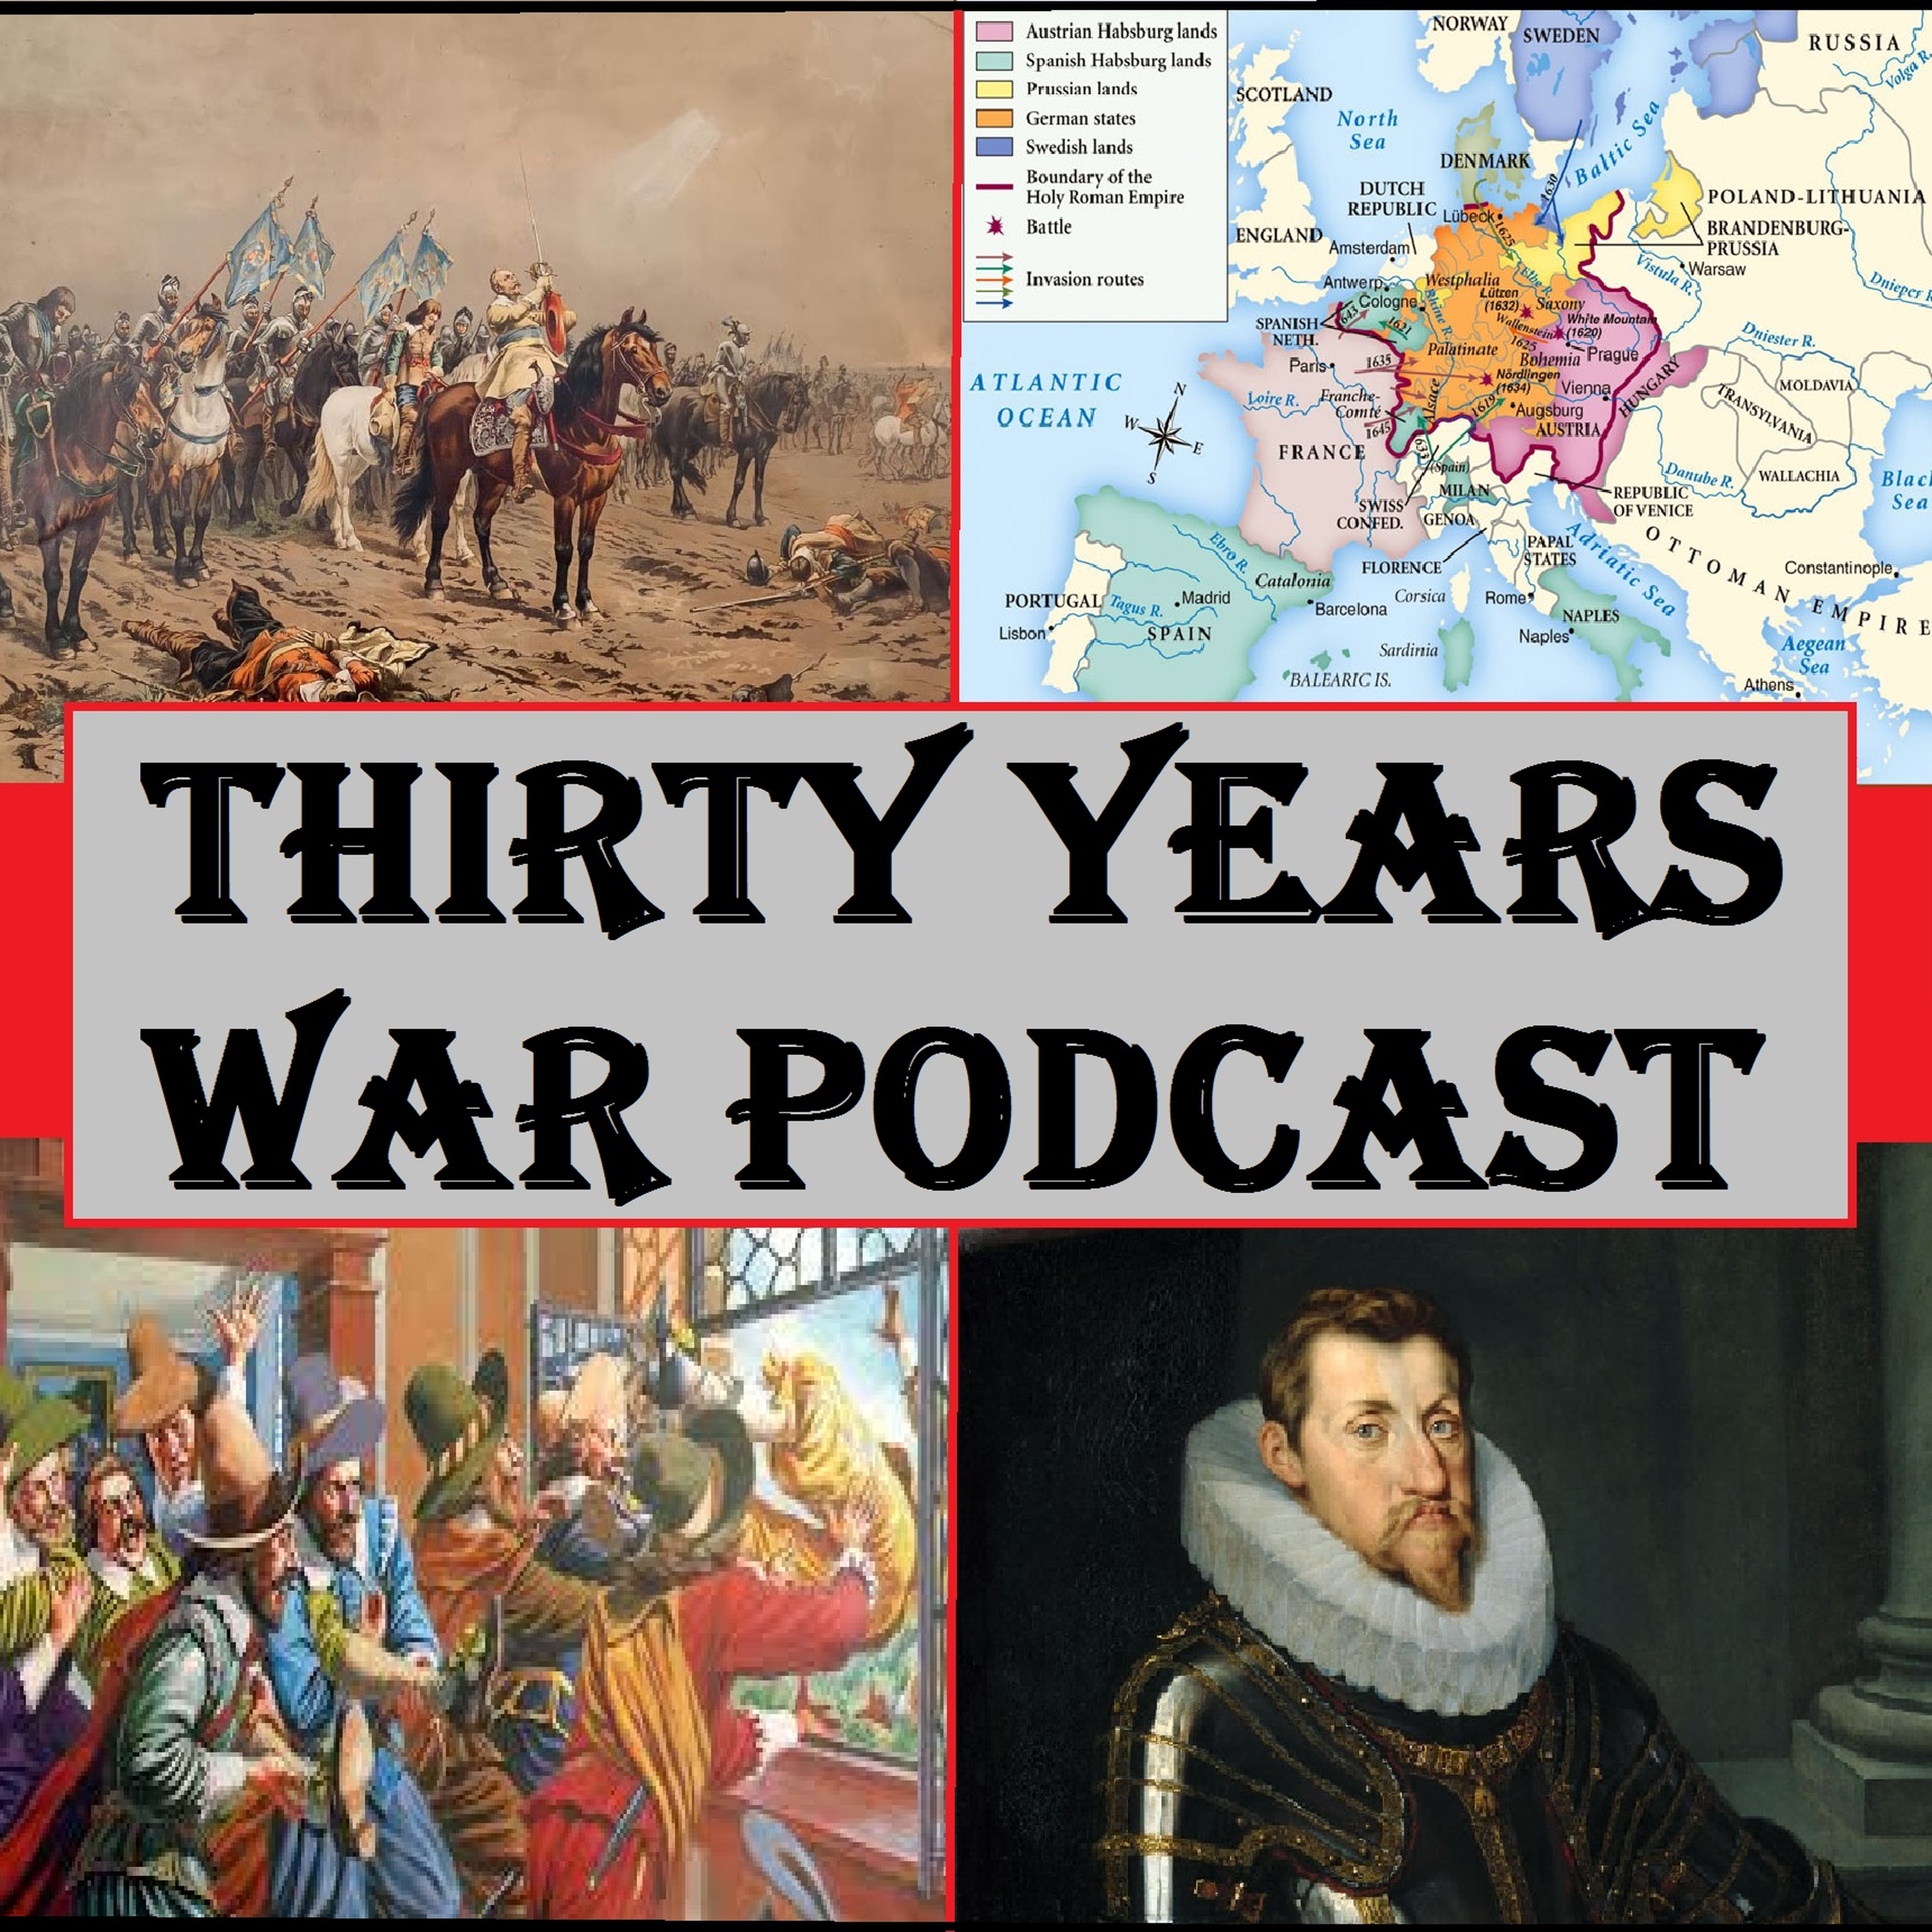 30YearsWar: 17th Century Warfare Episode 3